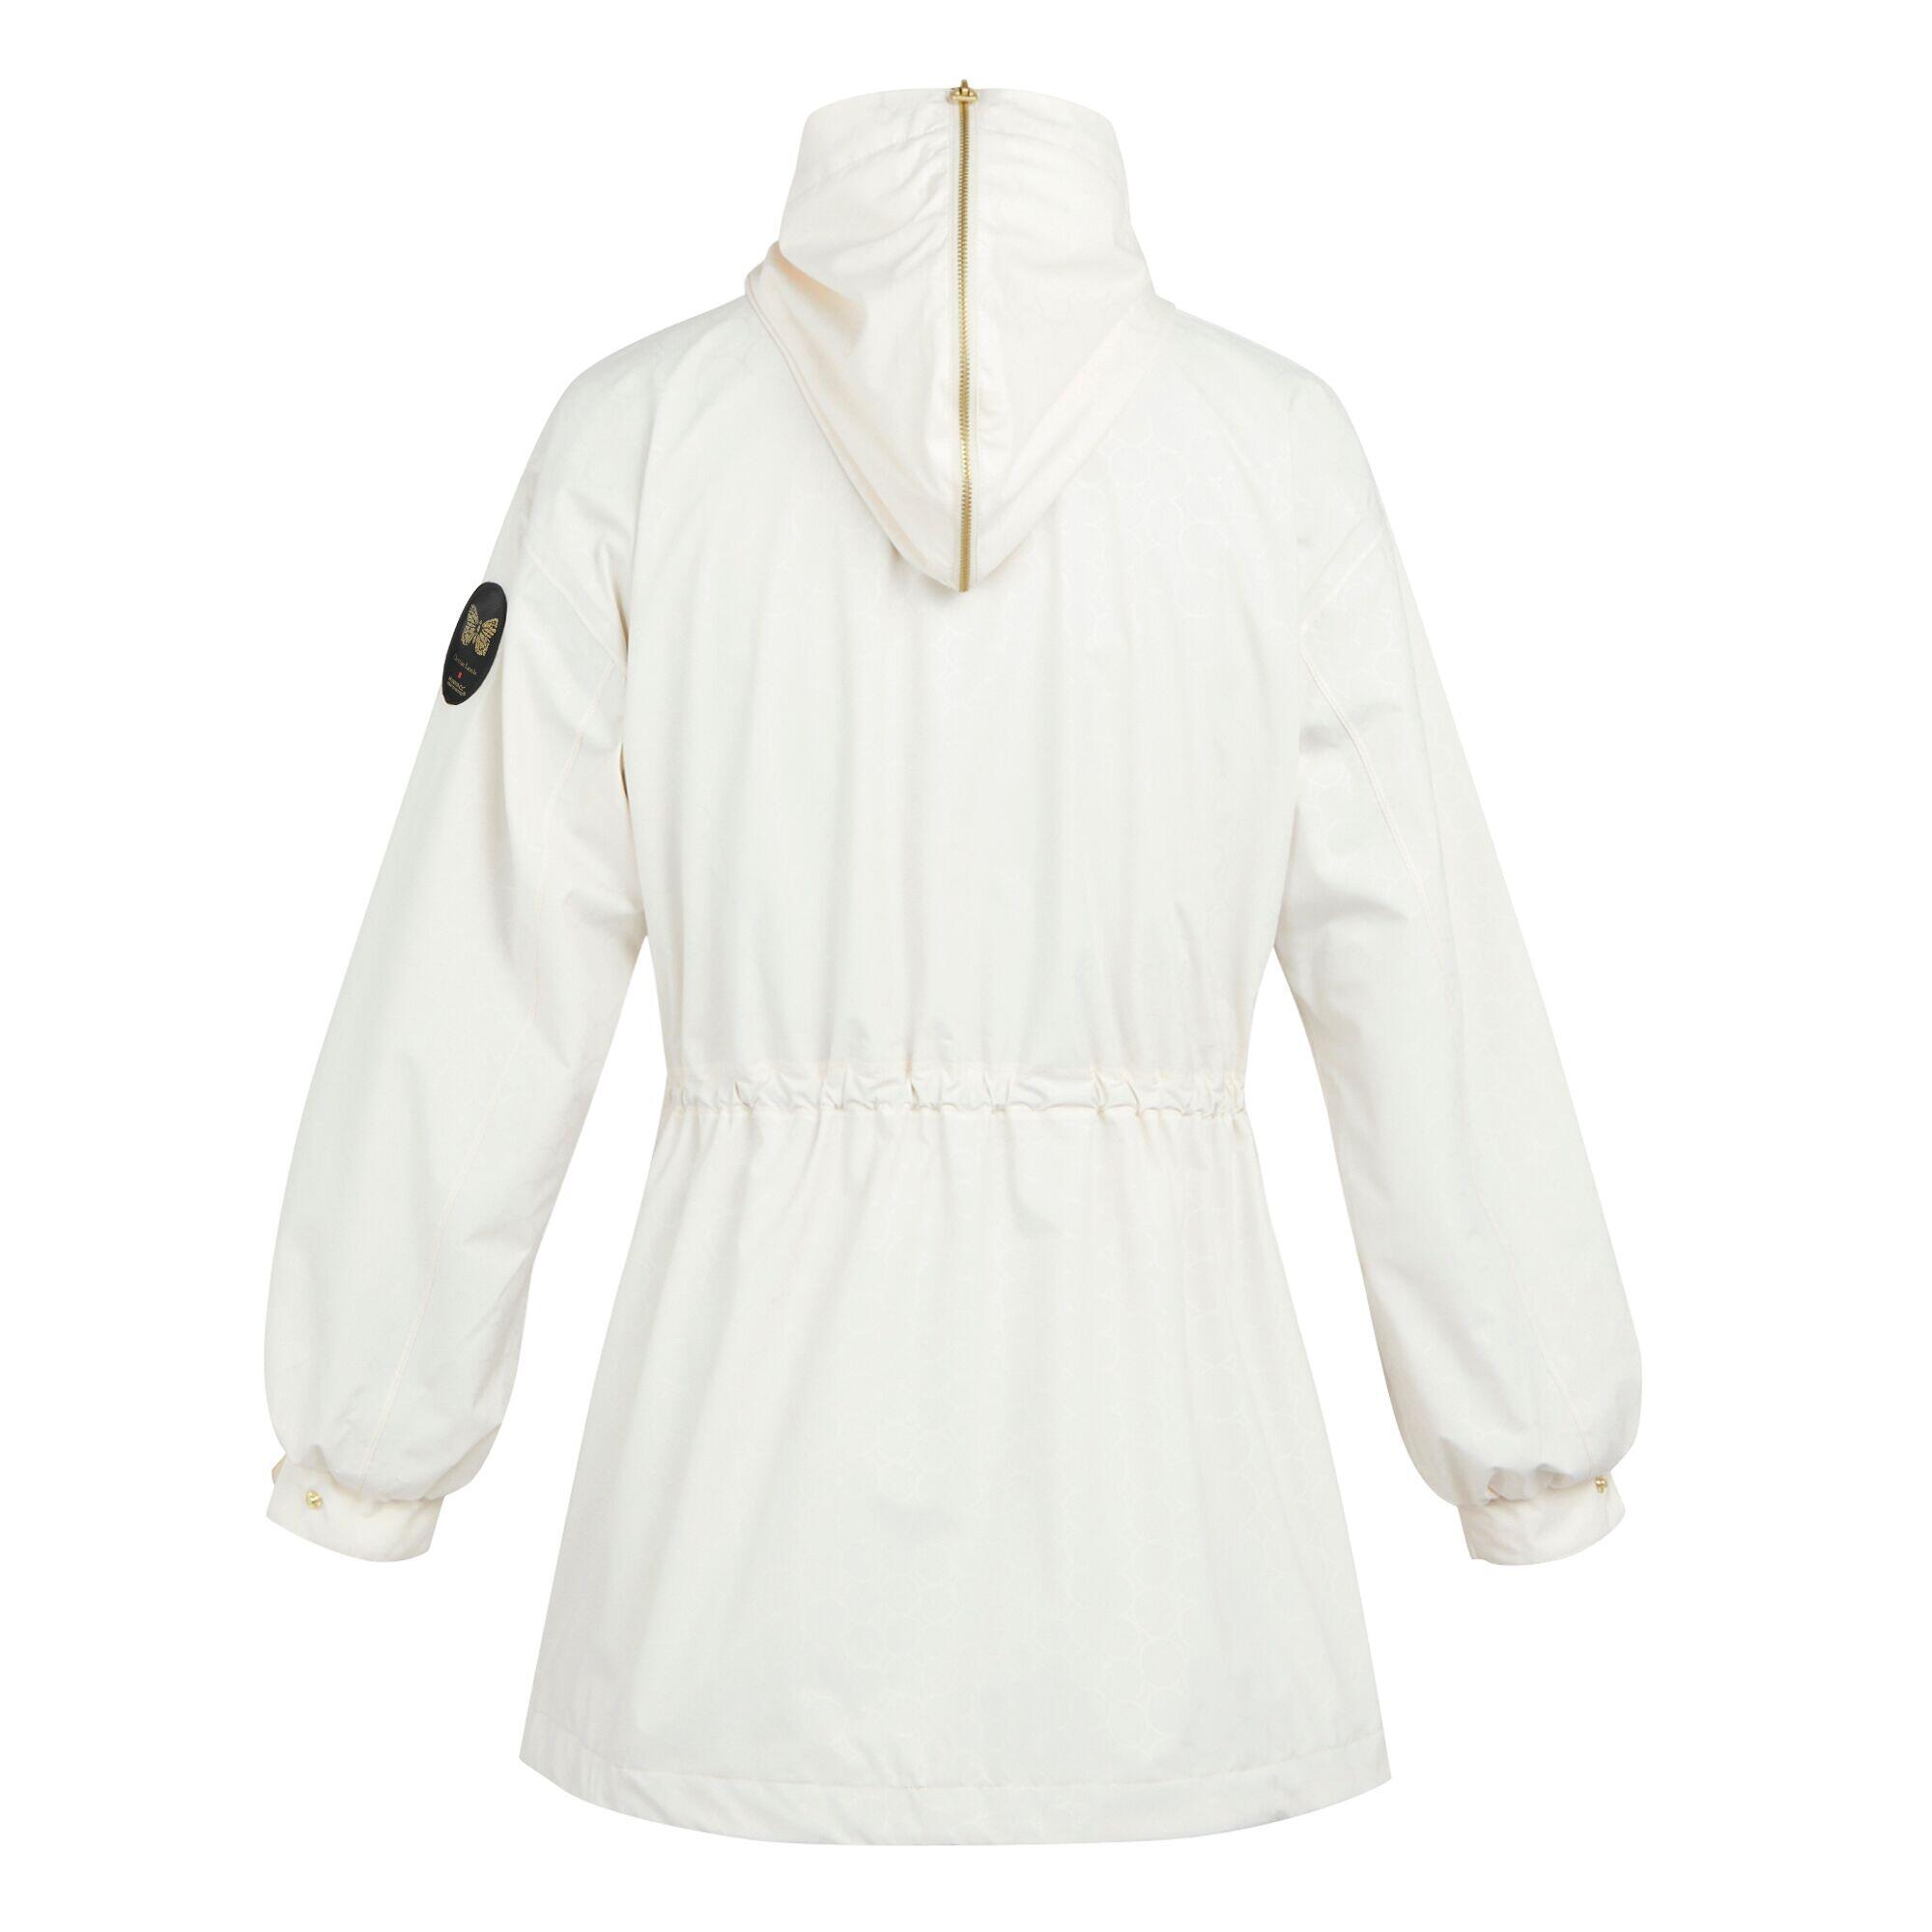 Womens/Ladies Christian Lacroix Bernis Pearl Waterproof Jacket (White) 2/4